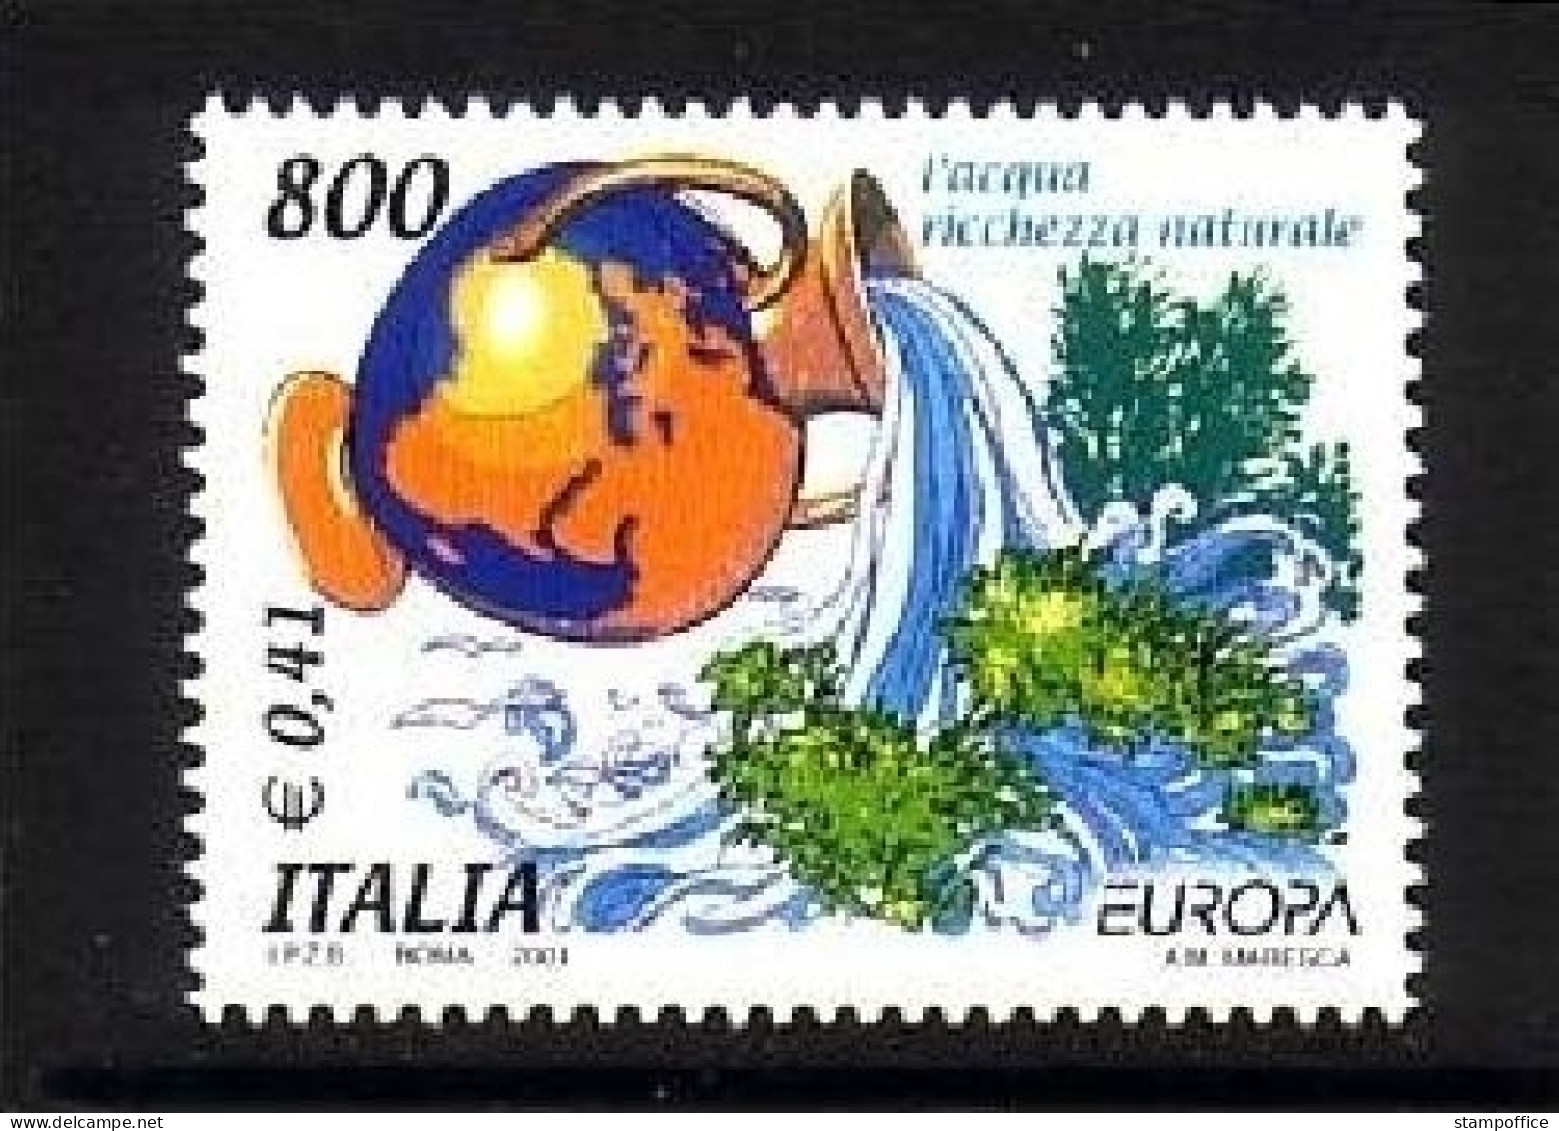 ITALIEN MI-NR. 2762 POSTFRISCH(MINT) EUROPA 2001 WASSER - 2001